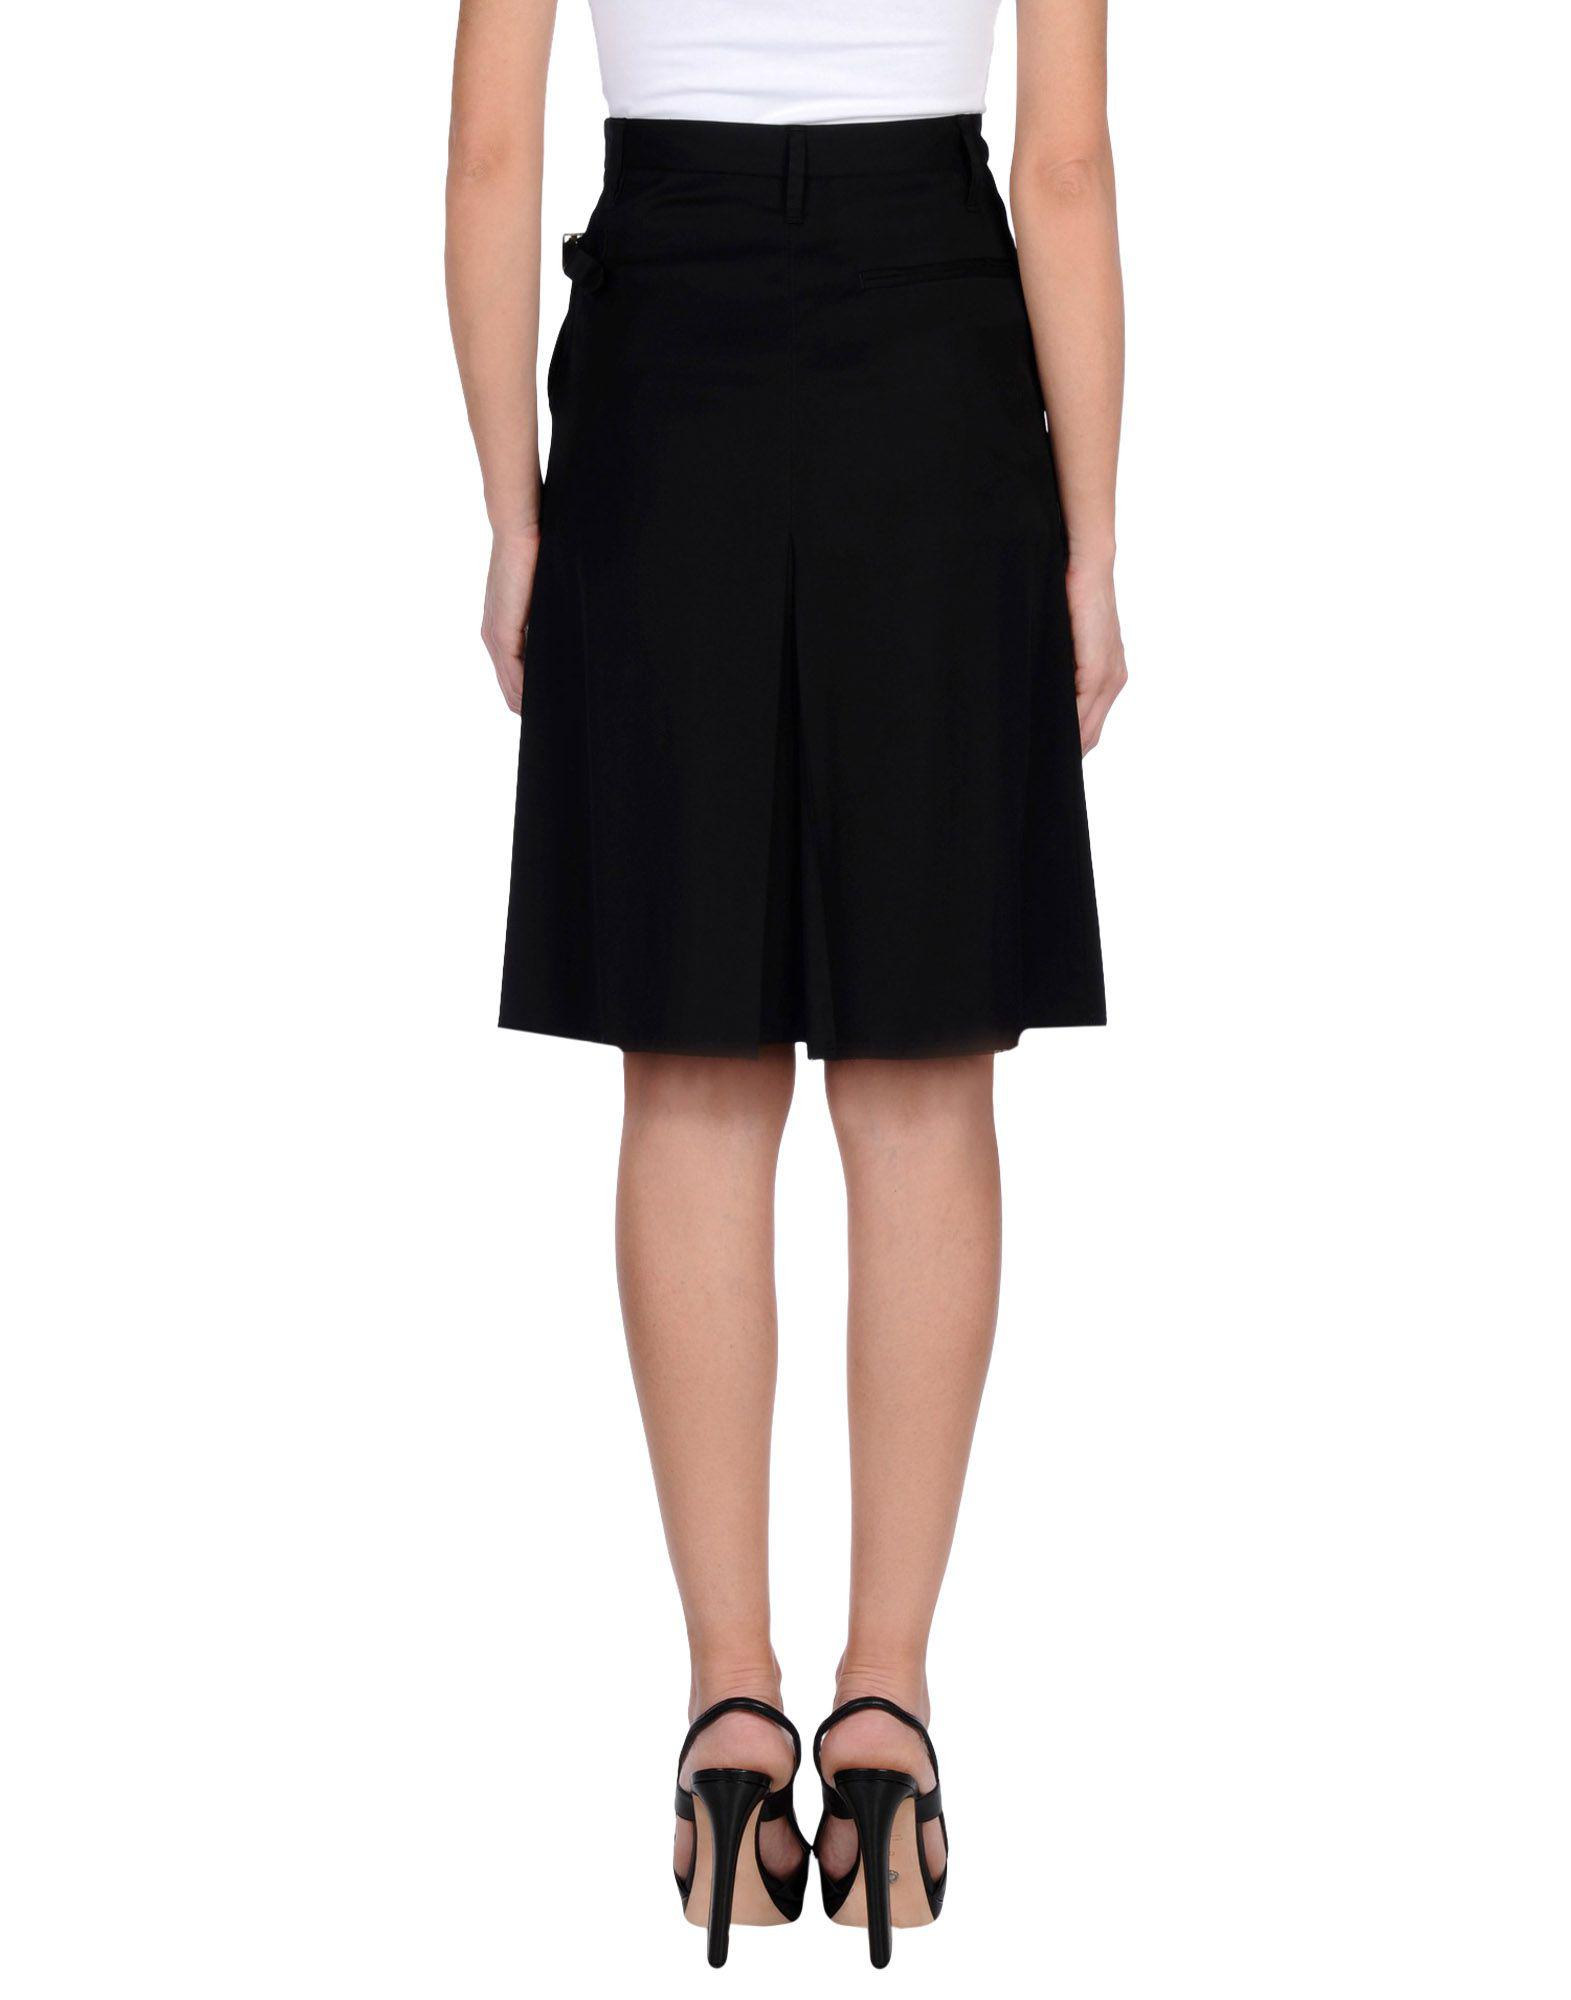 Golden Goose Deluxe Brand Synthetic Knee Length Skirt in Black - Lyst